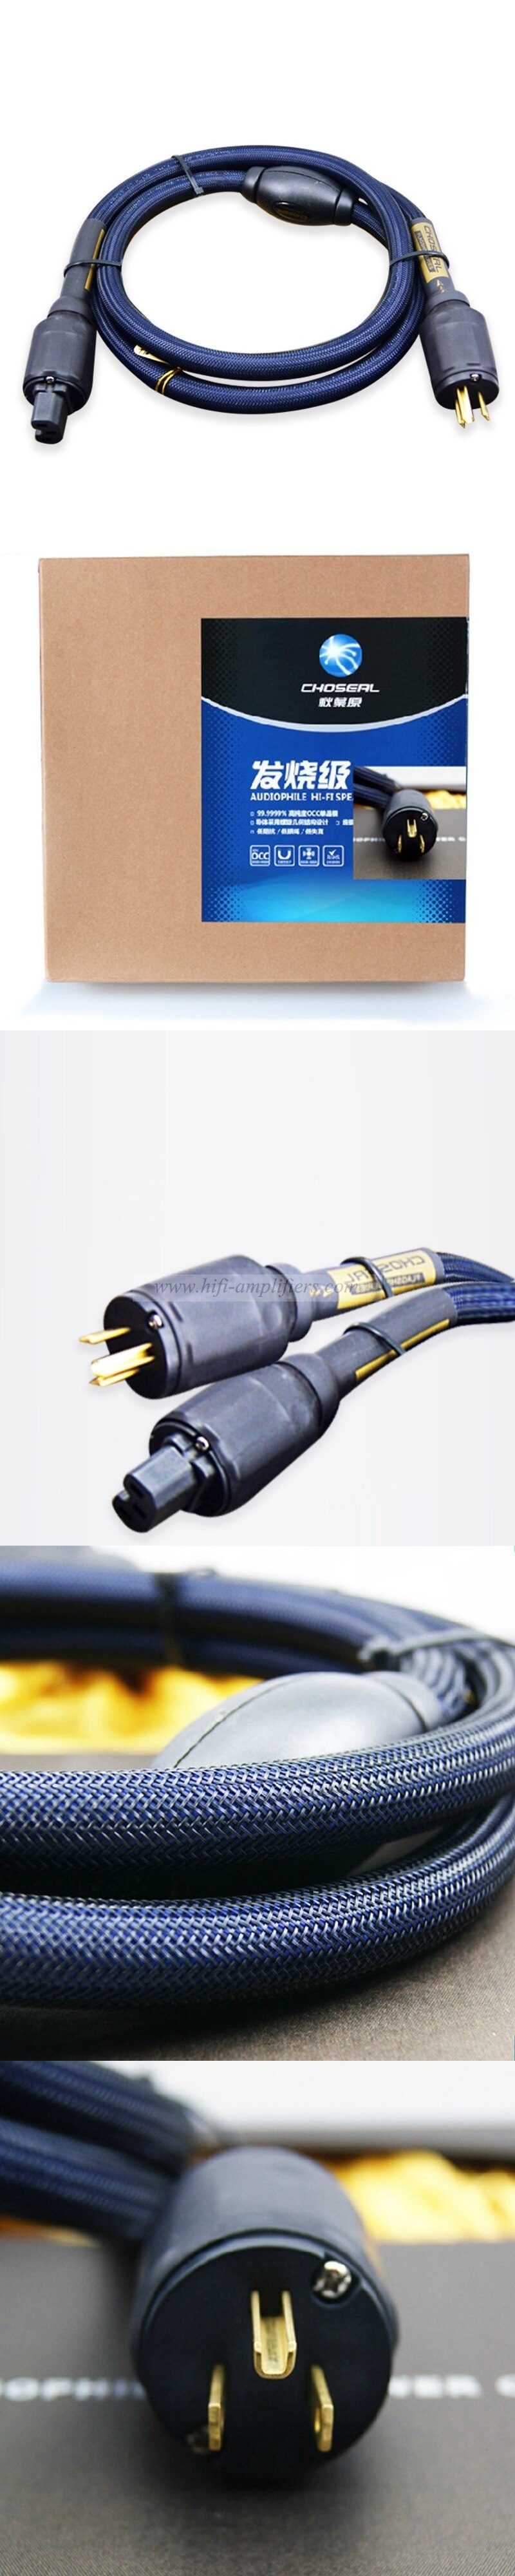 Choseal PB-5702 Audiophile 6N Cordon dalimentation en cuivre Câble audio Prises américaines